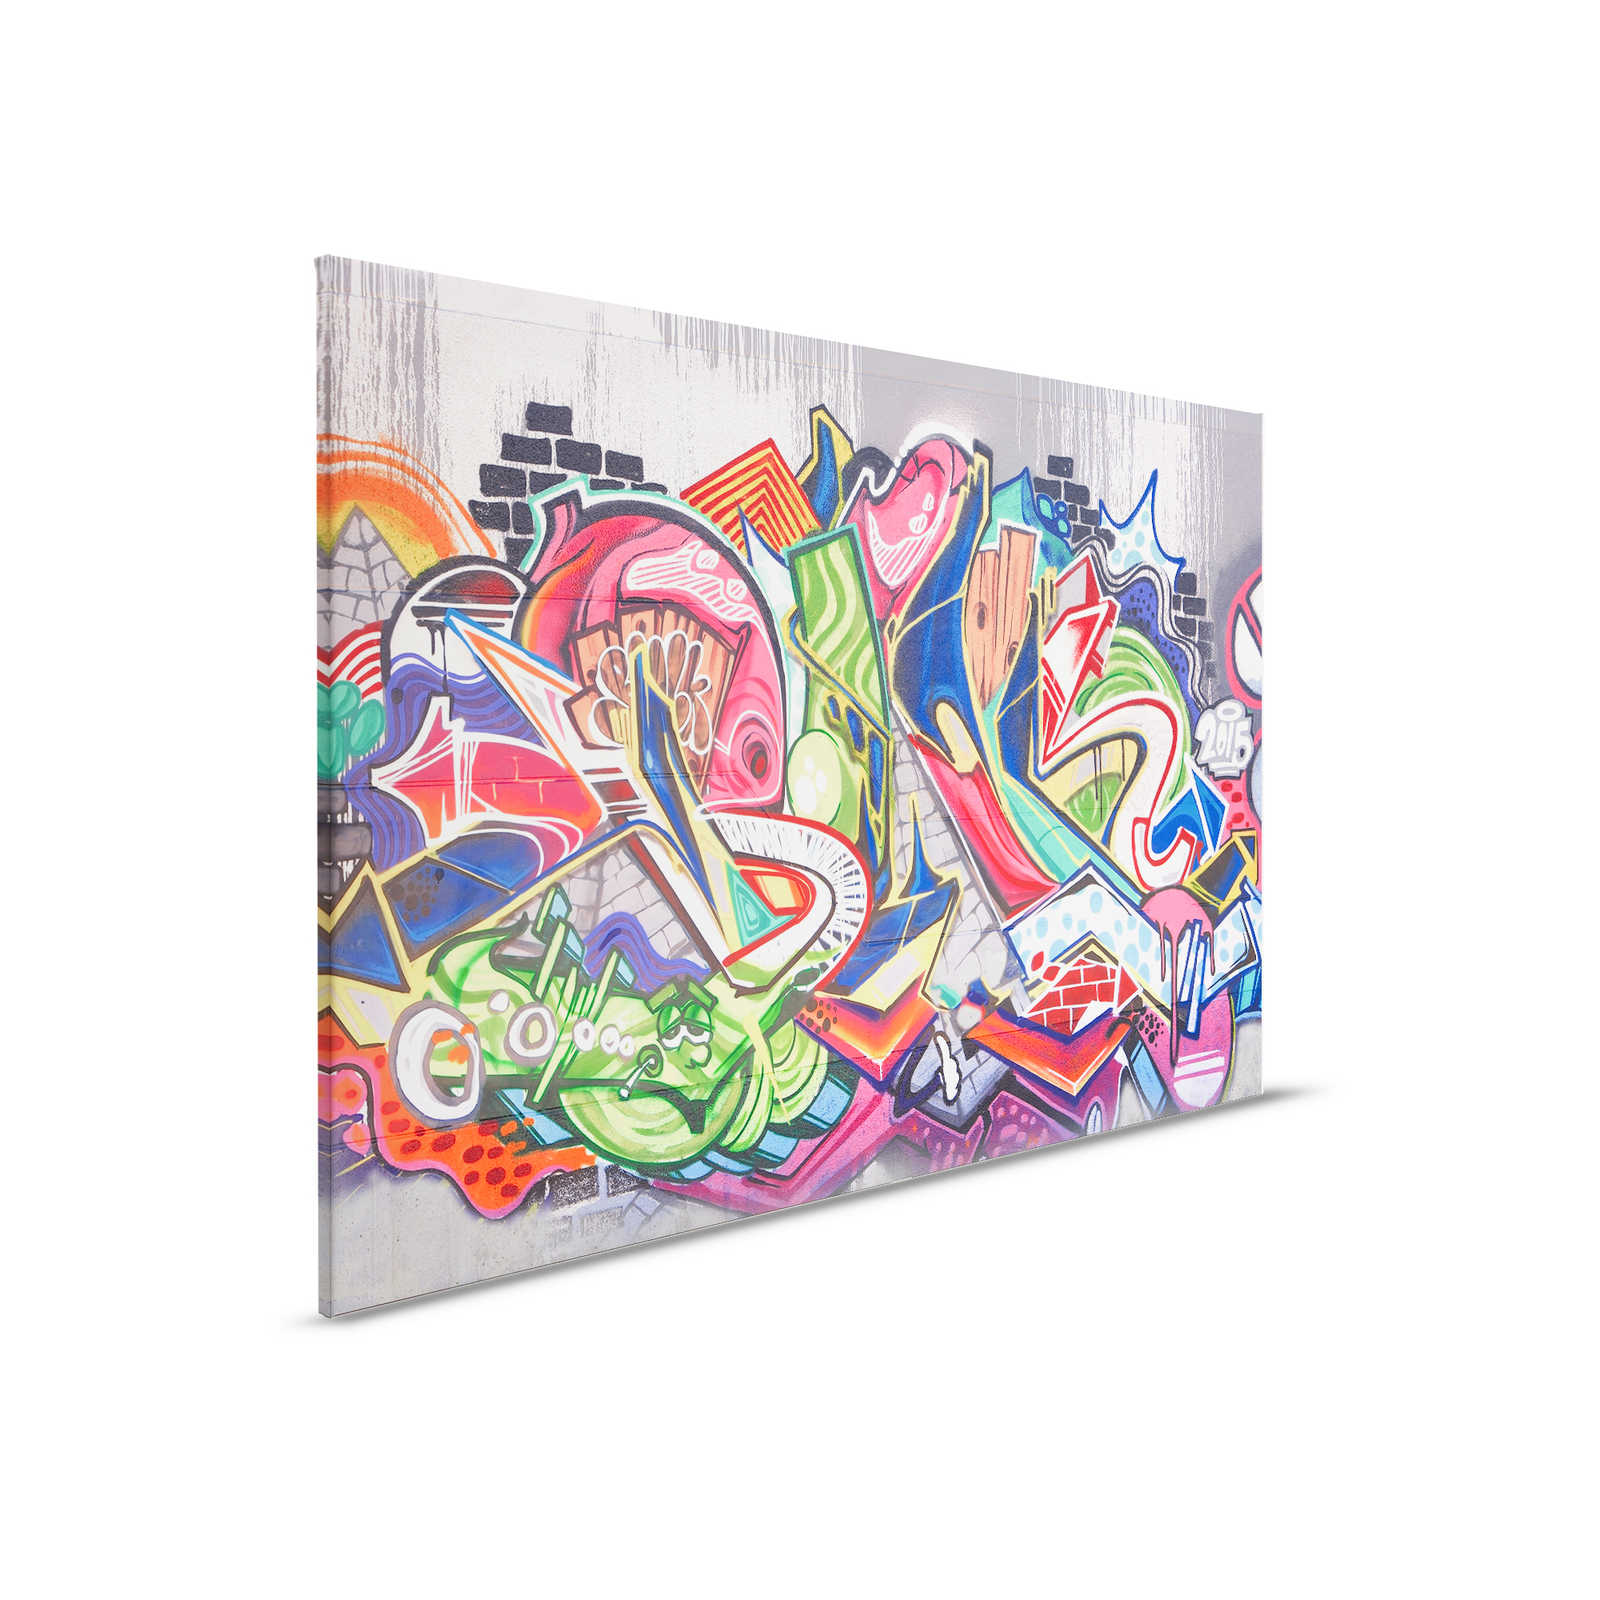         Urbane Graffiti Wand Leinwand – 0,90 m x 0,60 m
    